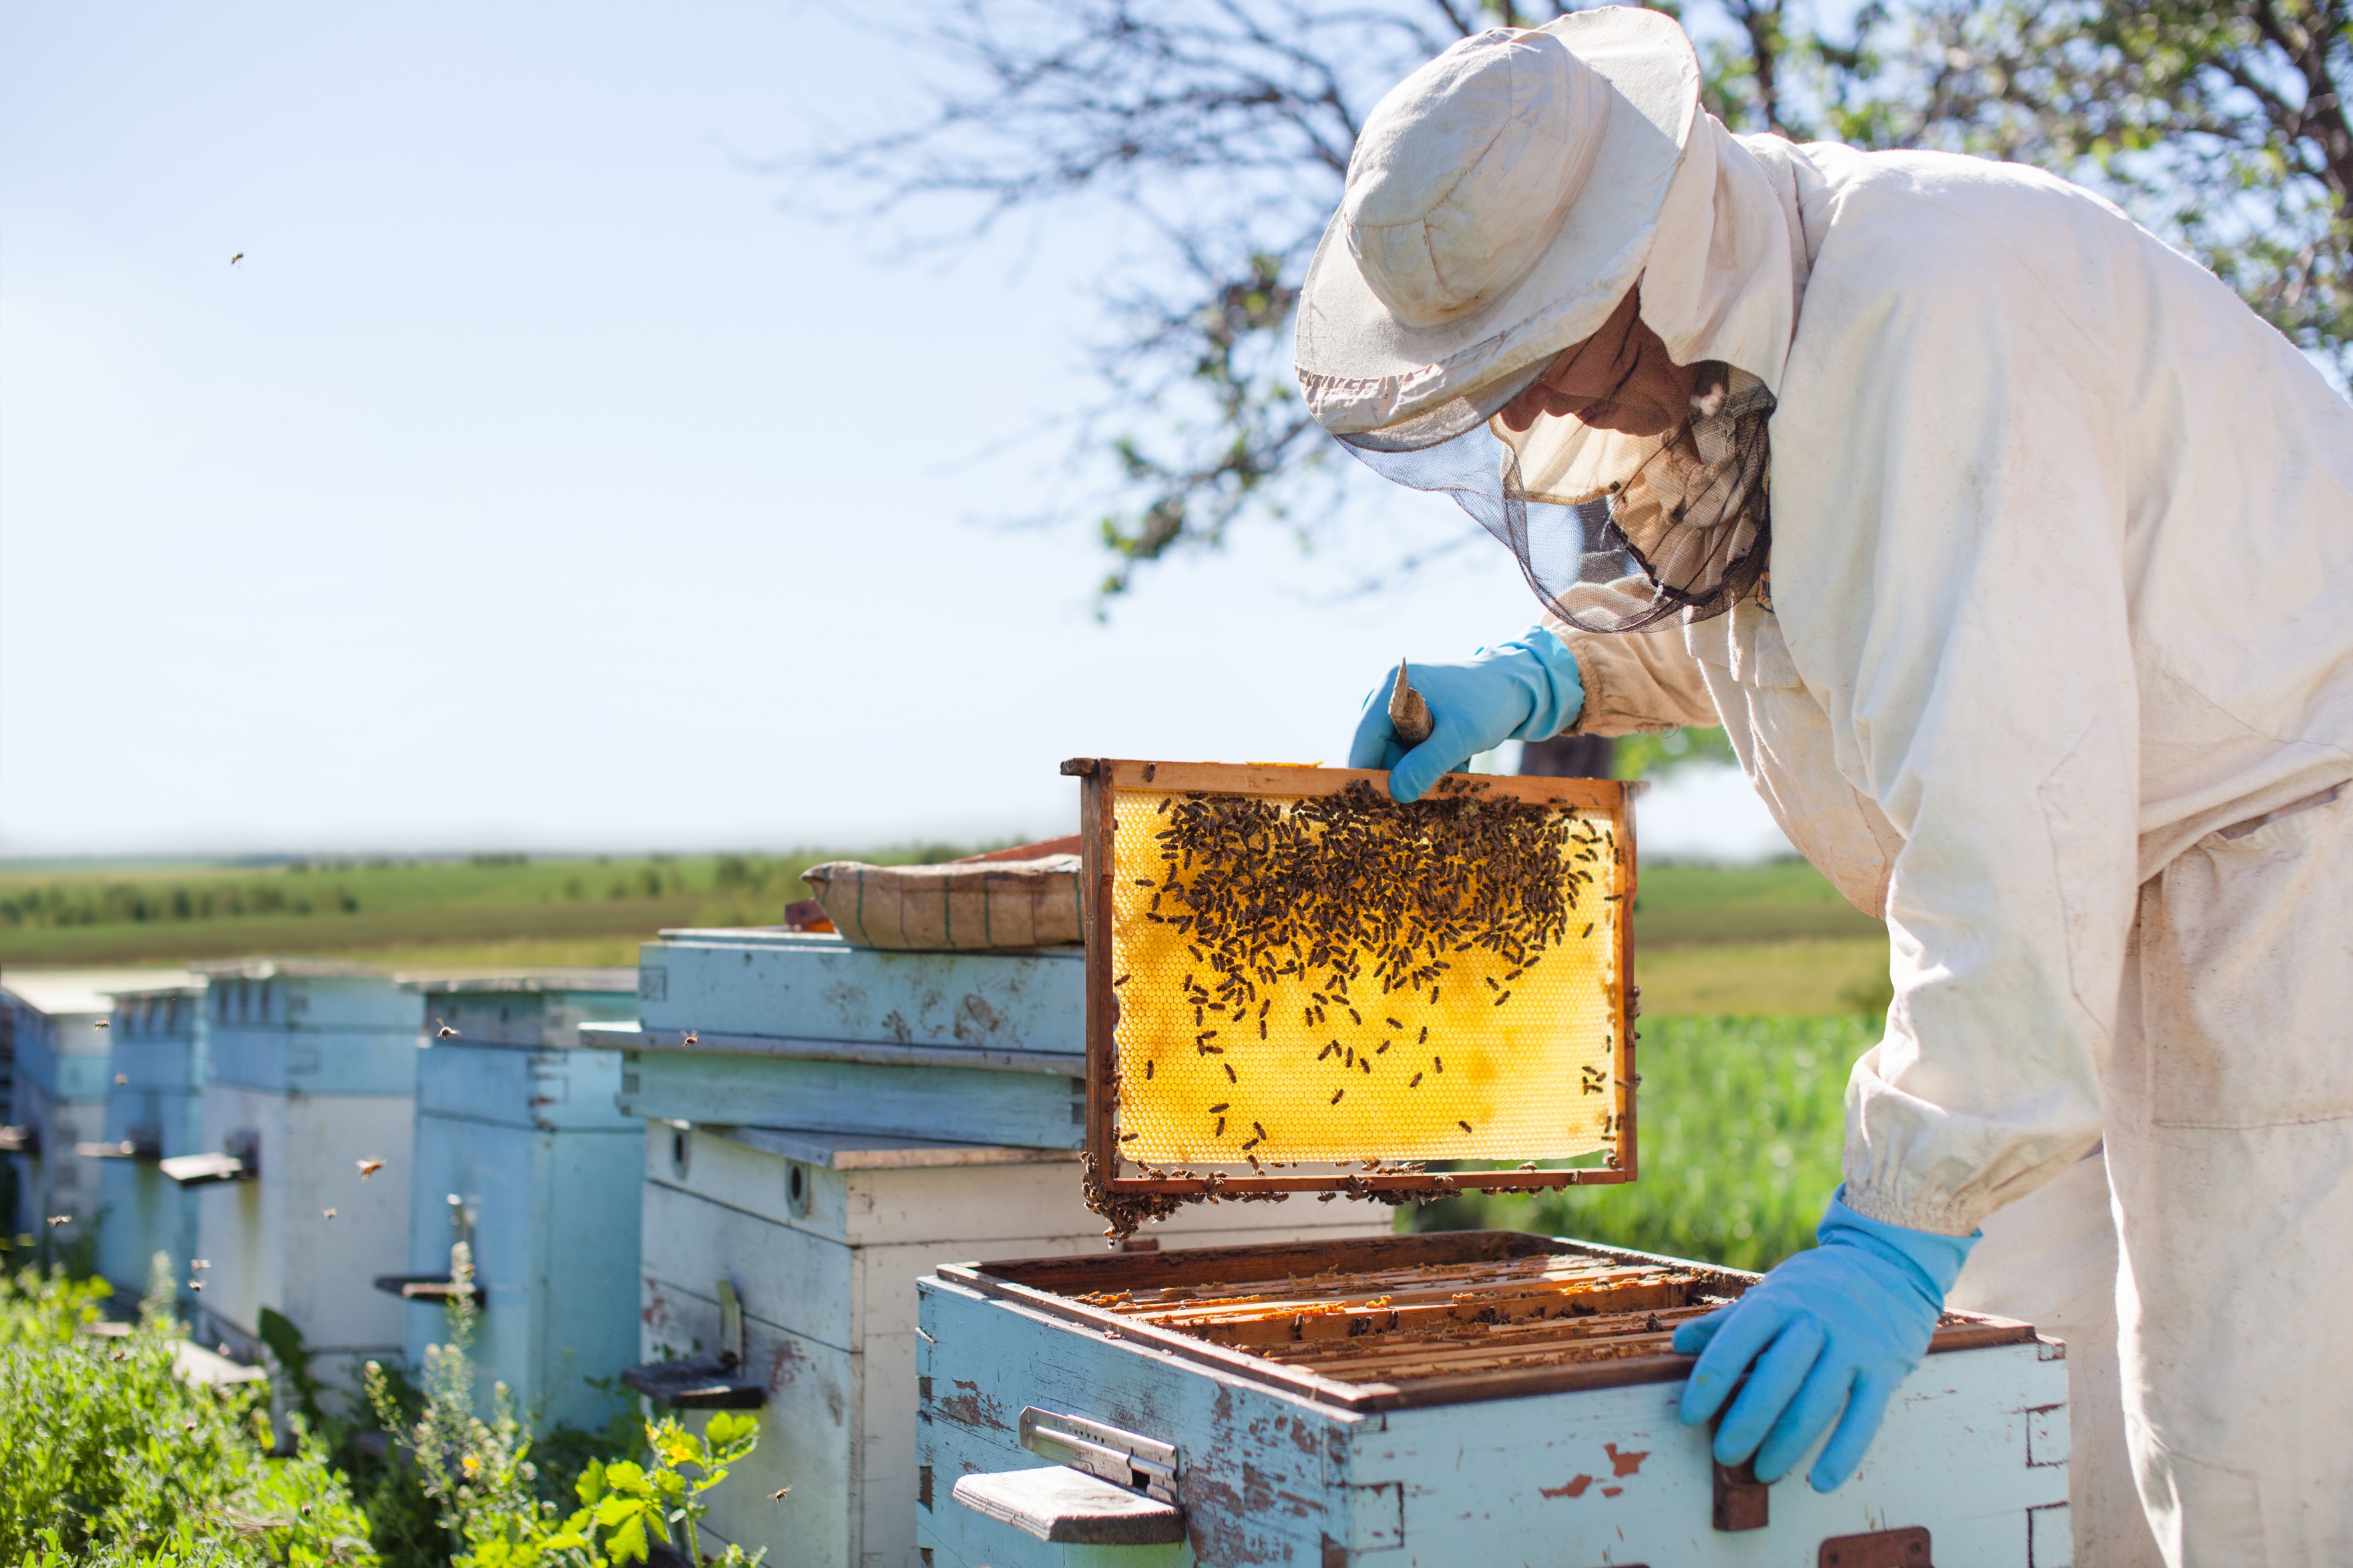 Cómo benefician las abejas y la apicultura a las personas